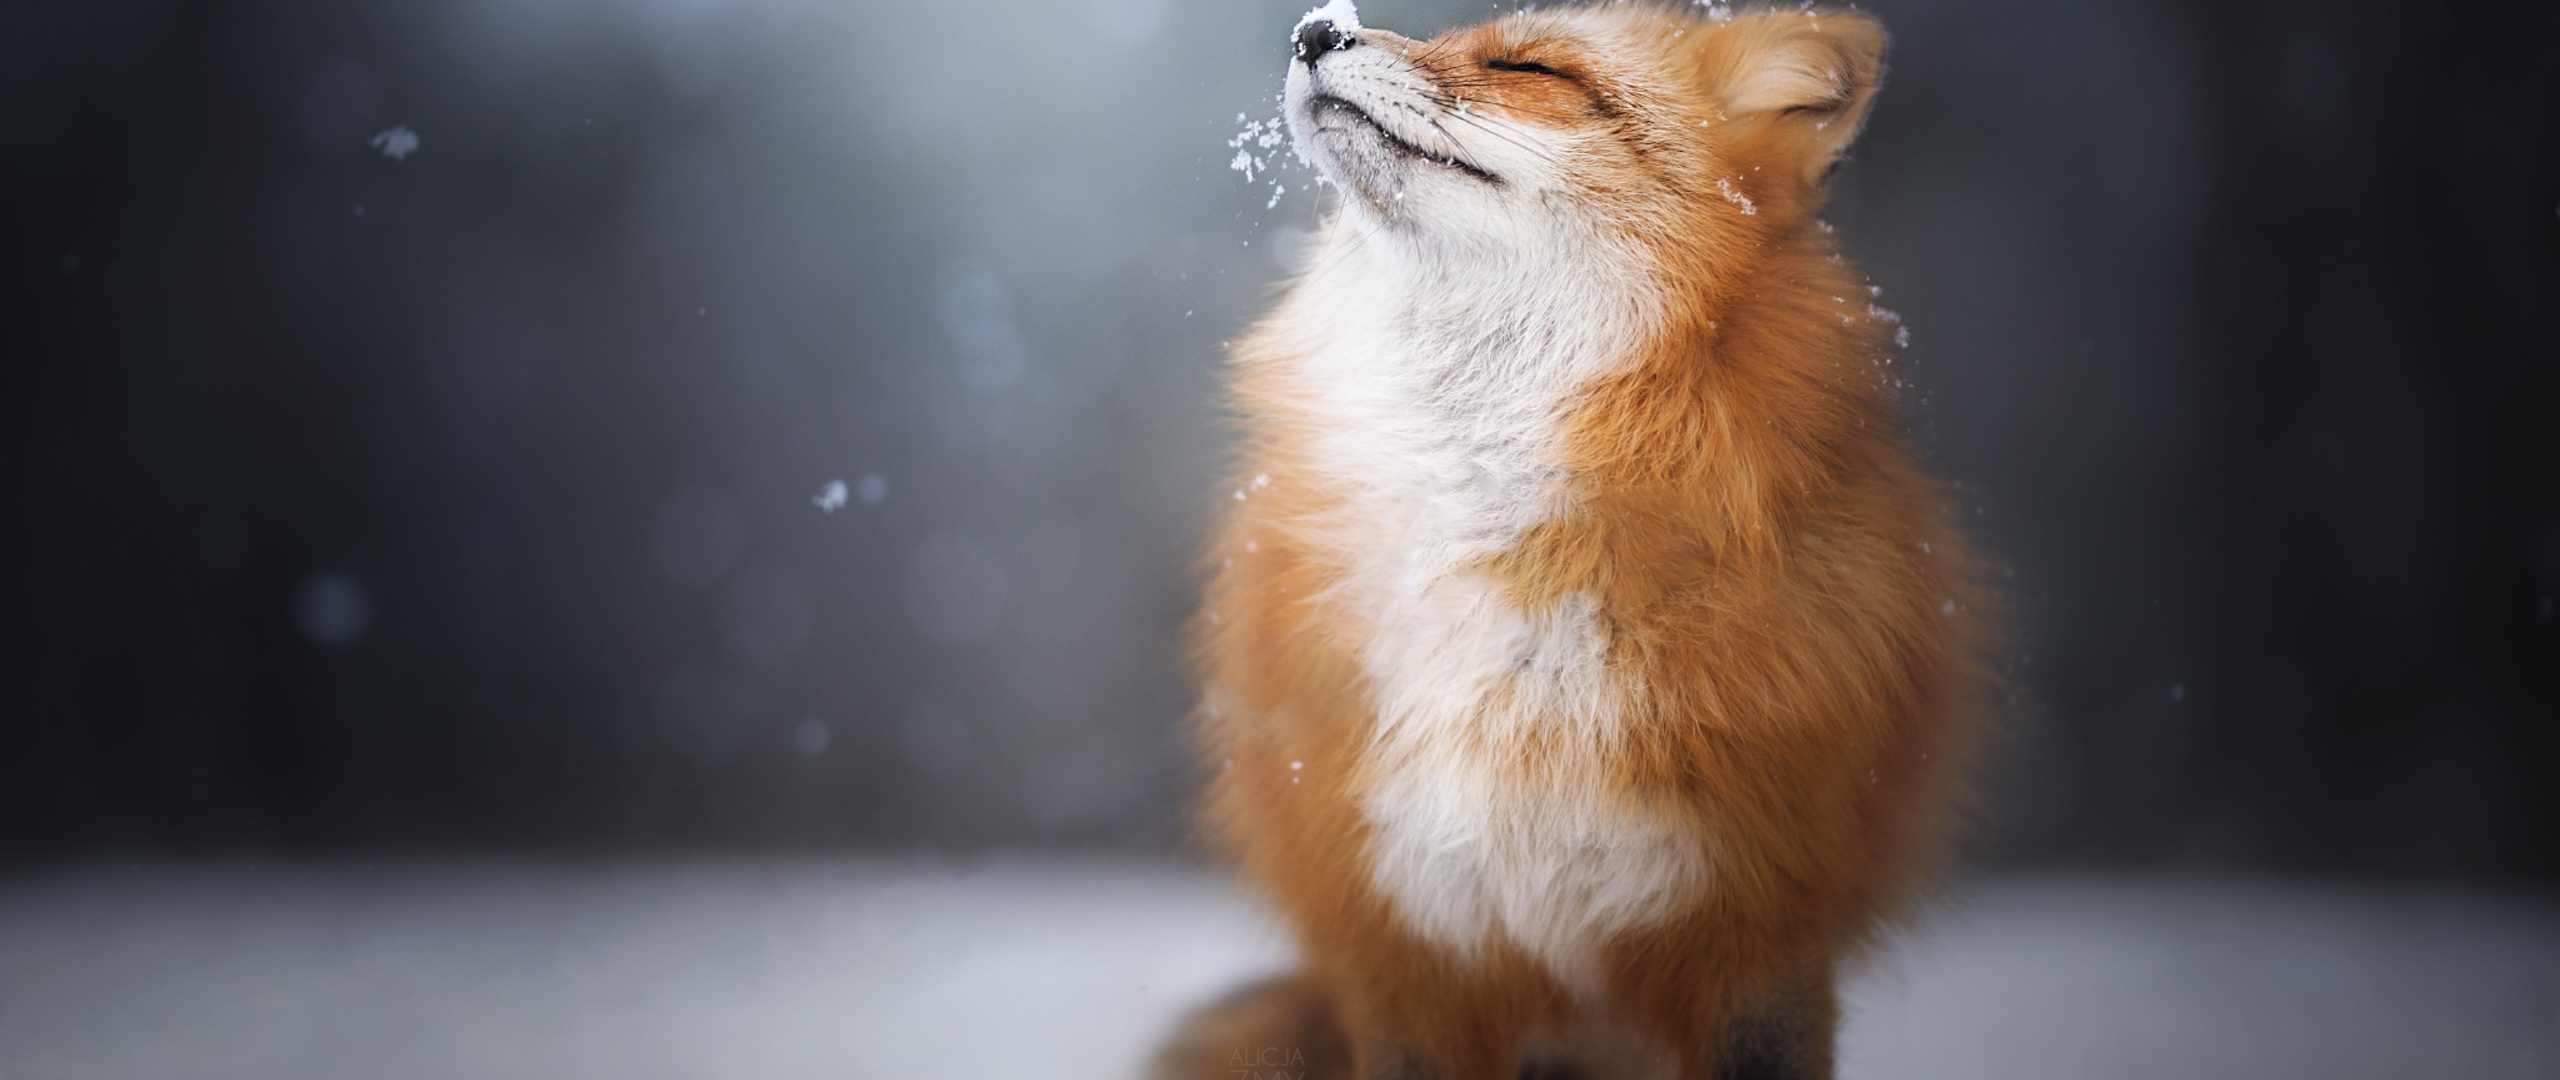 fox-enjoying-snowfall-4c-2560x1080.jpg